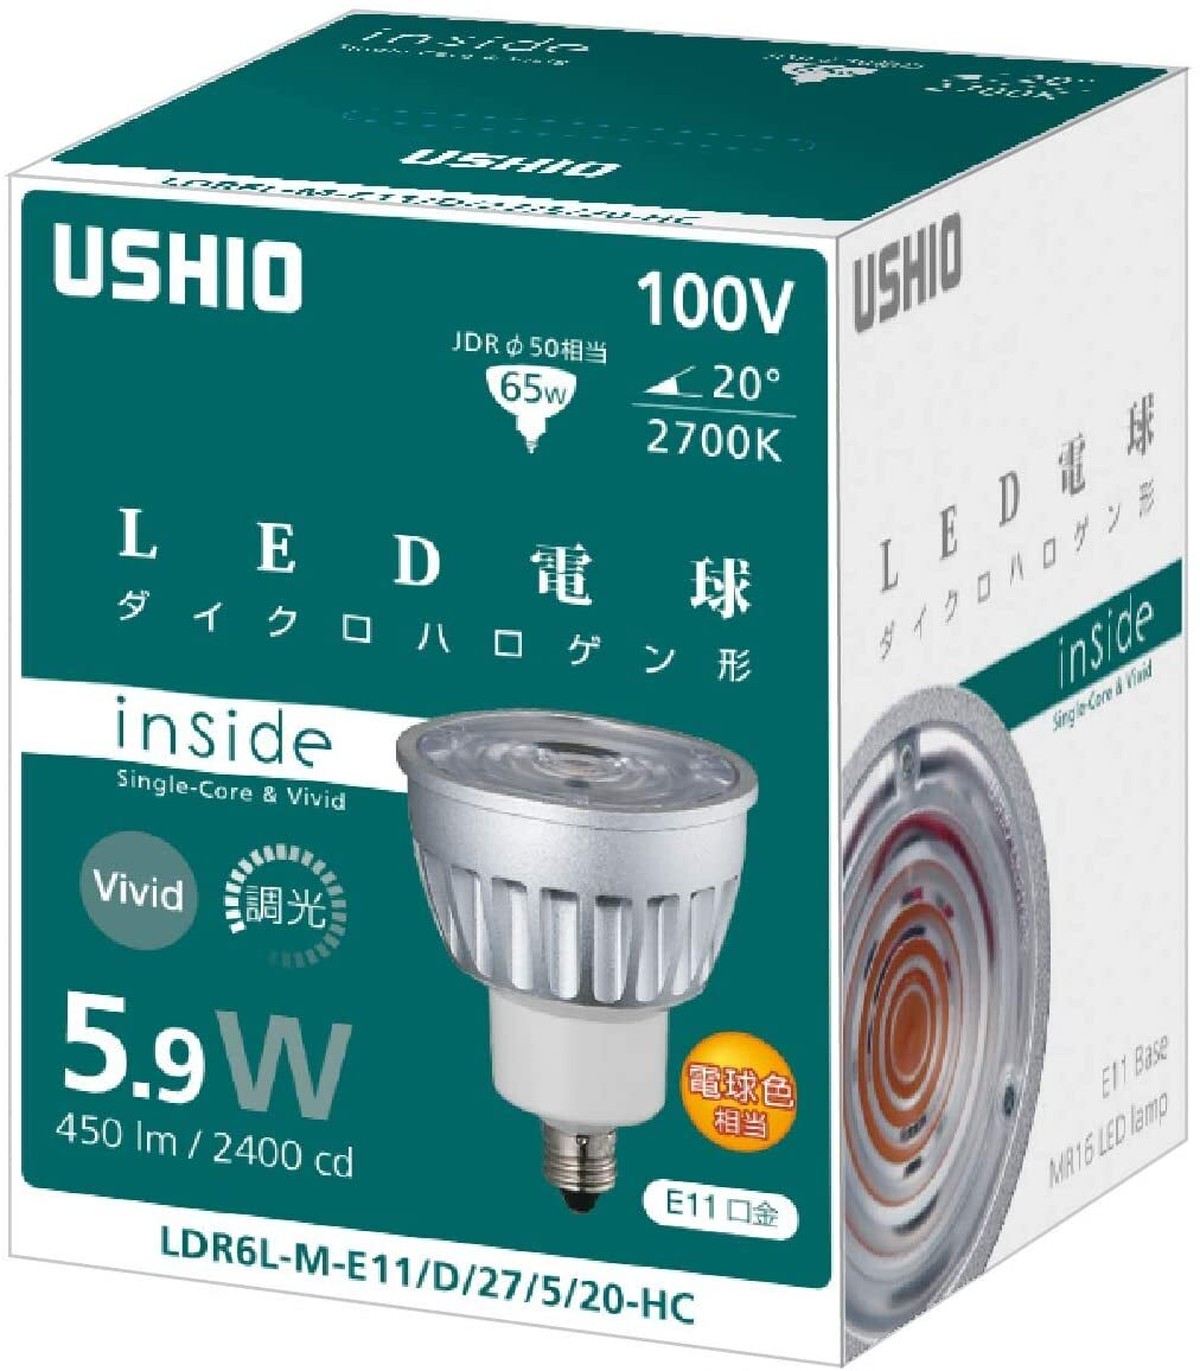 温かみのある照明 中角度 Ushio Insideシリーズ Led電球ダイクロハロゲン形 Ldr6lme11d 27 5 Hc タカミエンジ 省エネサポートセンター